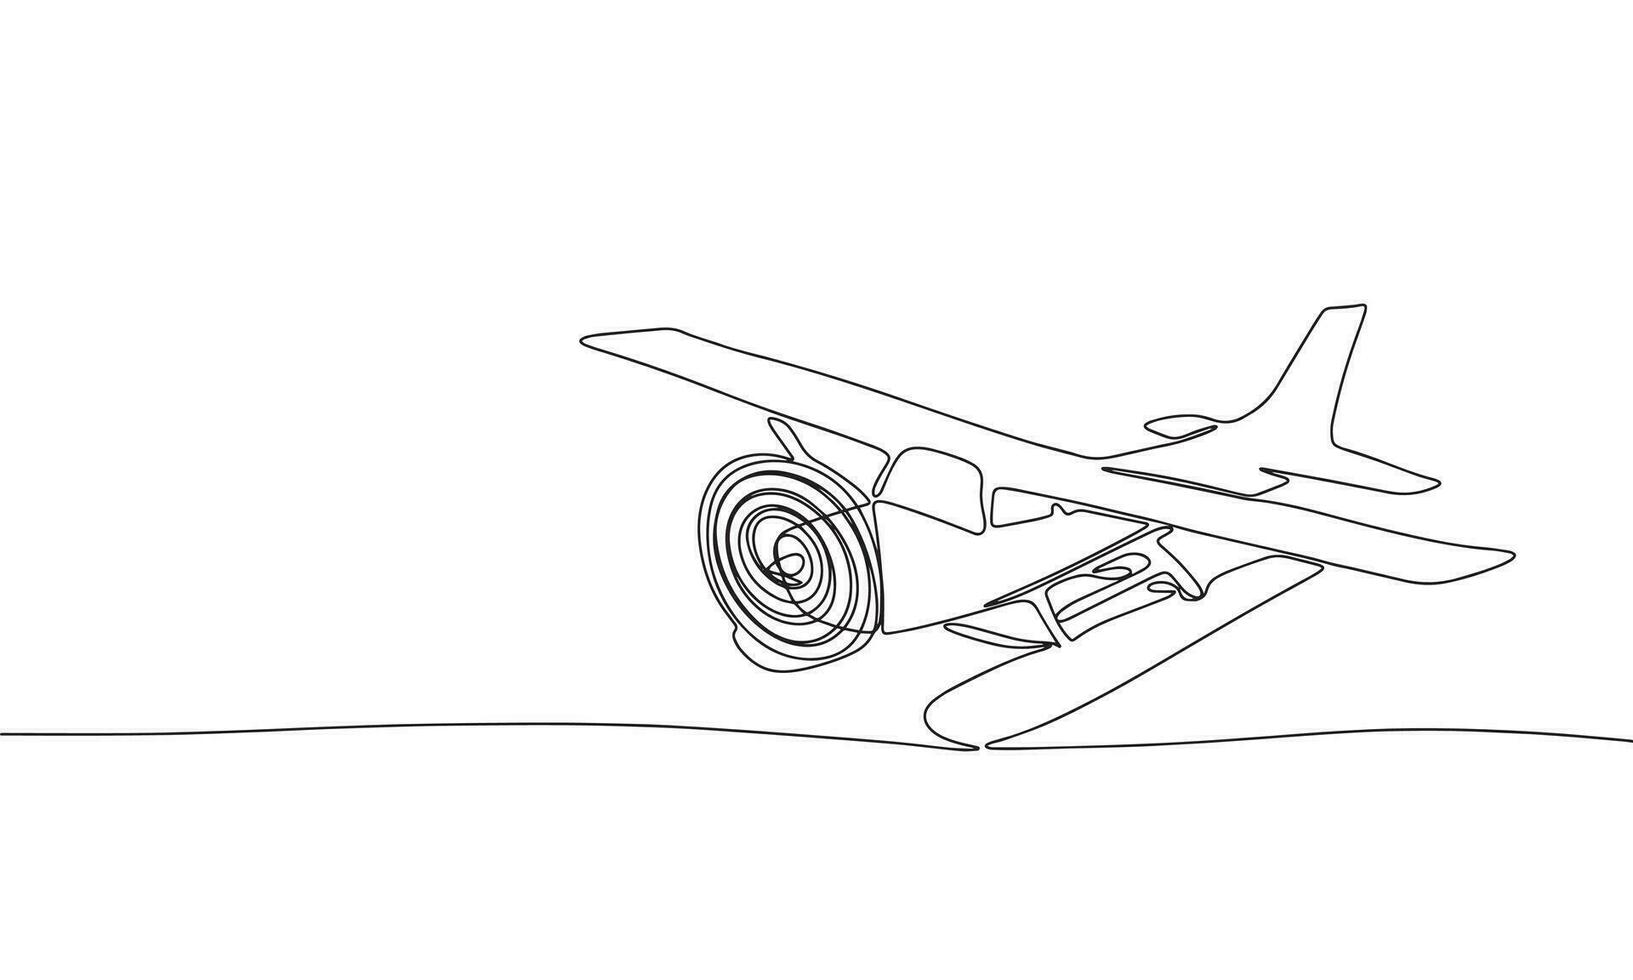 acqua aereo. uno linea continuo concetto aria aereo striscione. linea arte, schema, silhouette, vettore illustrazione.